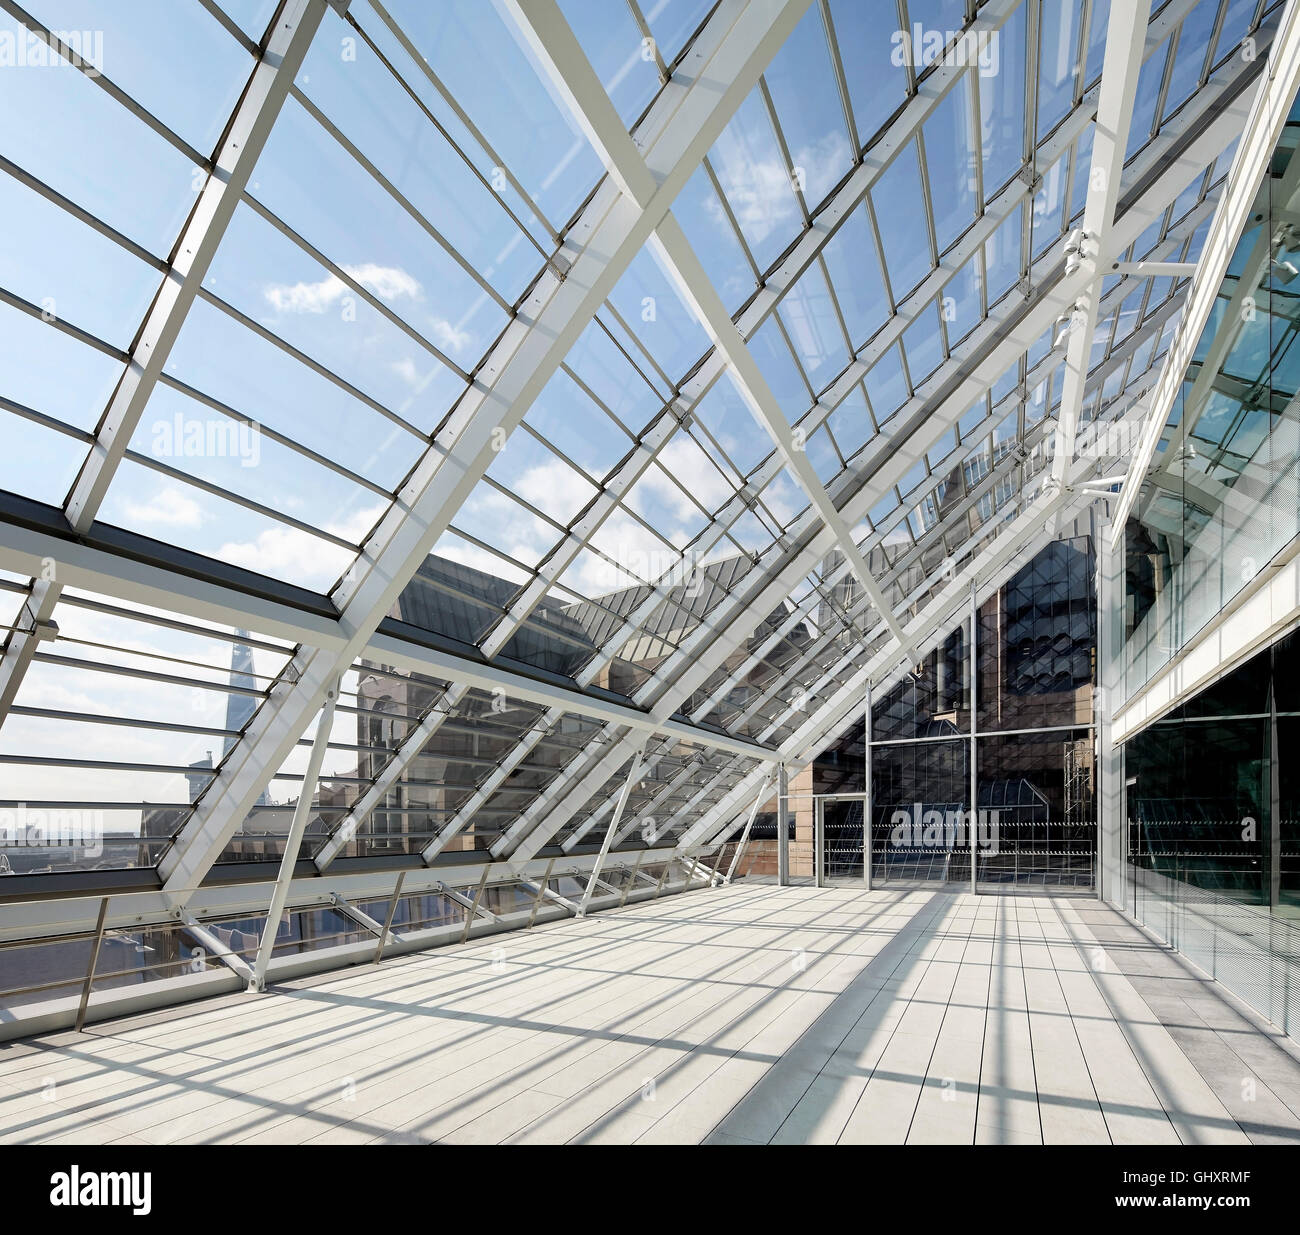 Le cadre de support en métal de vitrage du toit. 70 Mark Lane - City of London, Londres, Royaume-Uni. Architecte : Bennetts Associates Architects, 2015. Banque D'Images